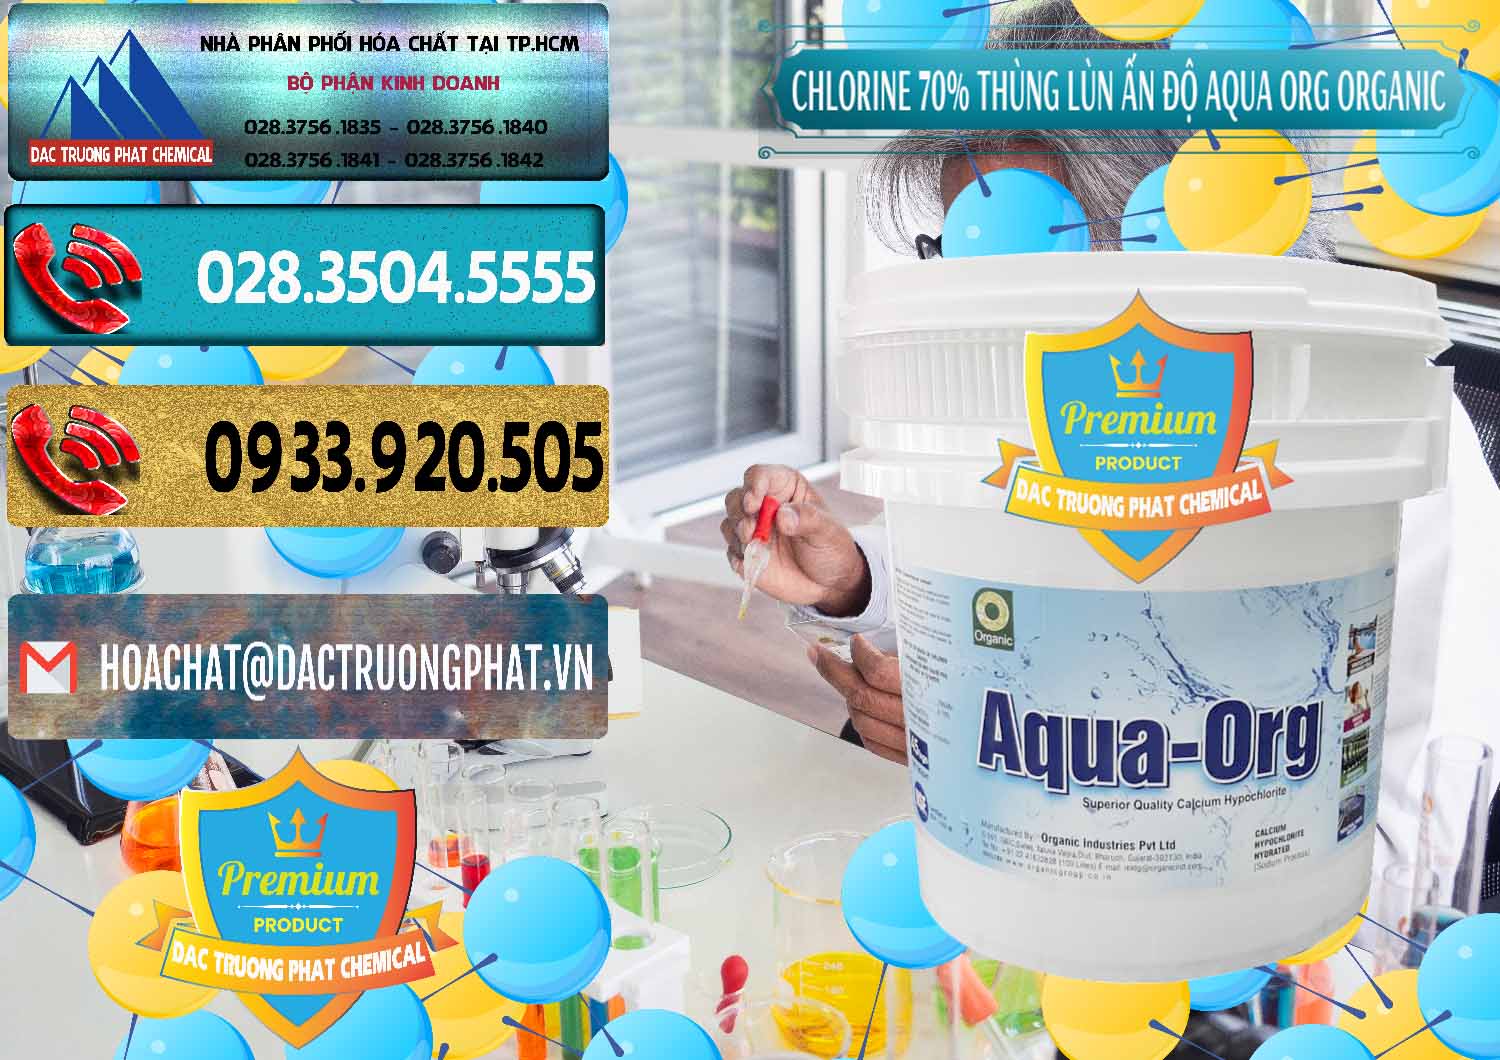 Bán ( cung cấp ) Chlorine – Clorin 70% Thùng Lùn Ấn Độ Aqua ORG Organic India - 0212 - Nơi chuyên phân phối ( bán ) hóa chất tại TP.HCM - hoachatdetnhuom.com